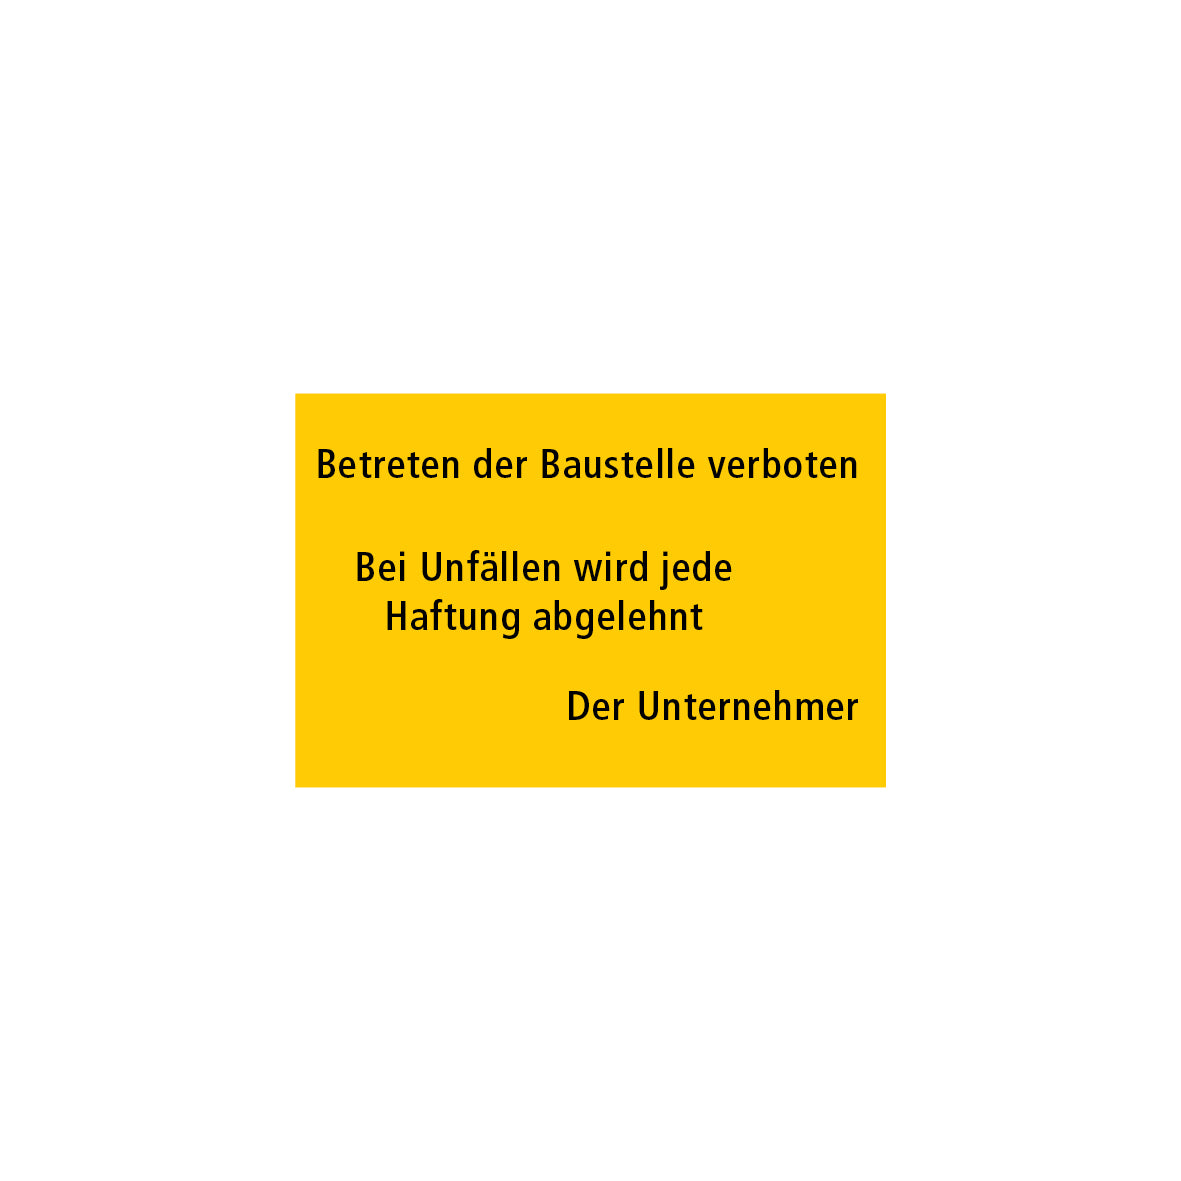 Baustellentafel, Betreten der Baustelle verboten, 60/40 cm, gelb/schwarz, EG, 7.0161